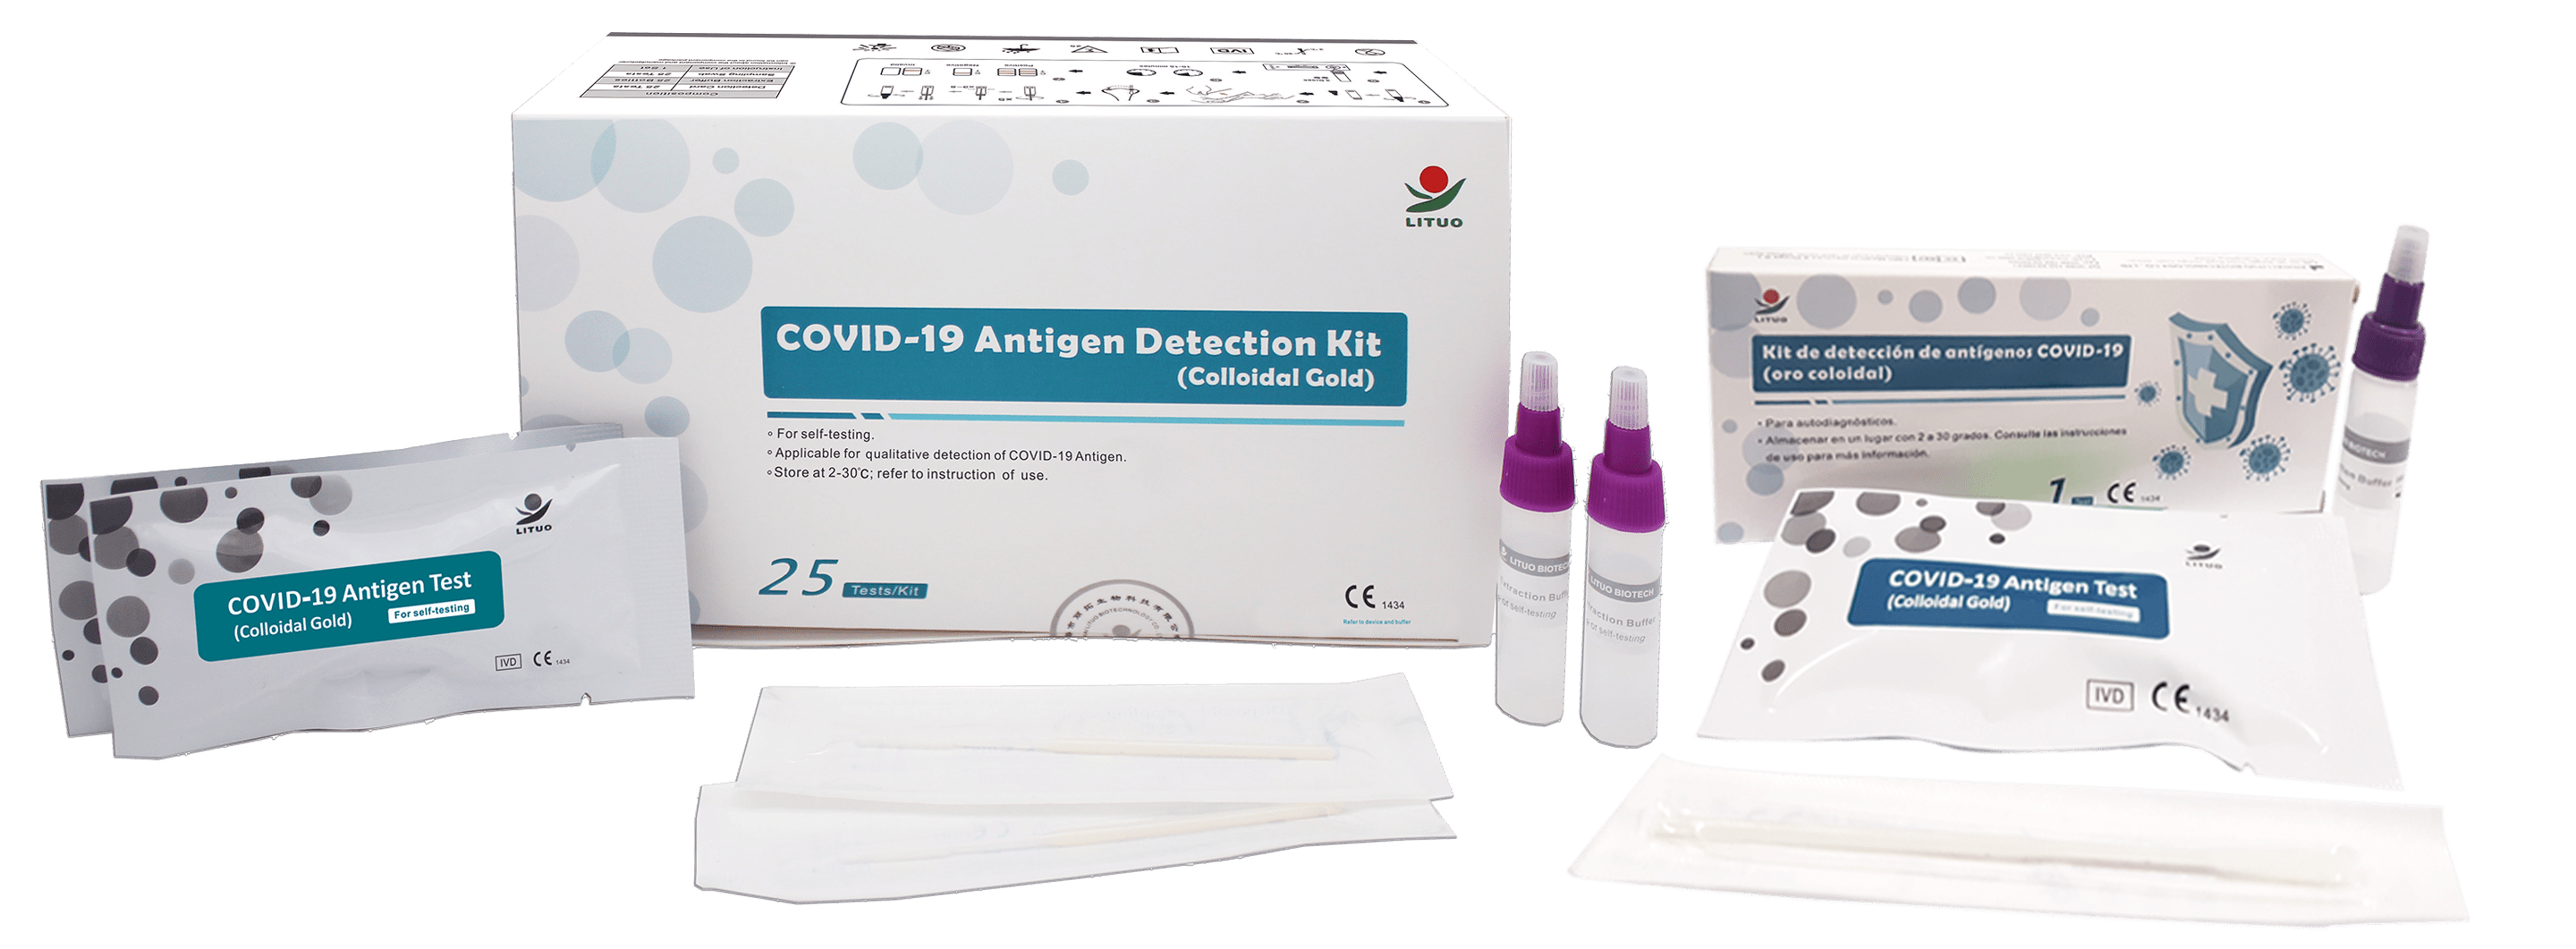 tests-antigenos-covid19